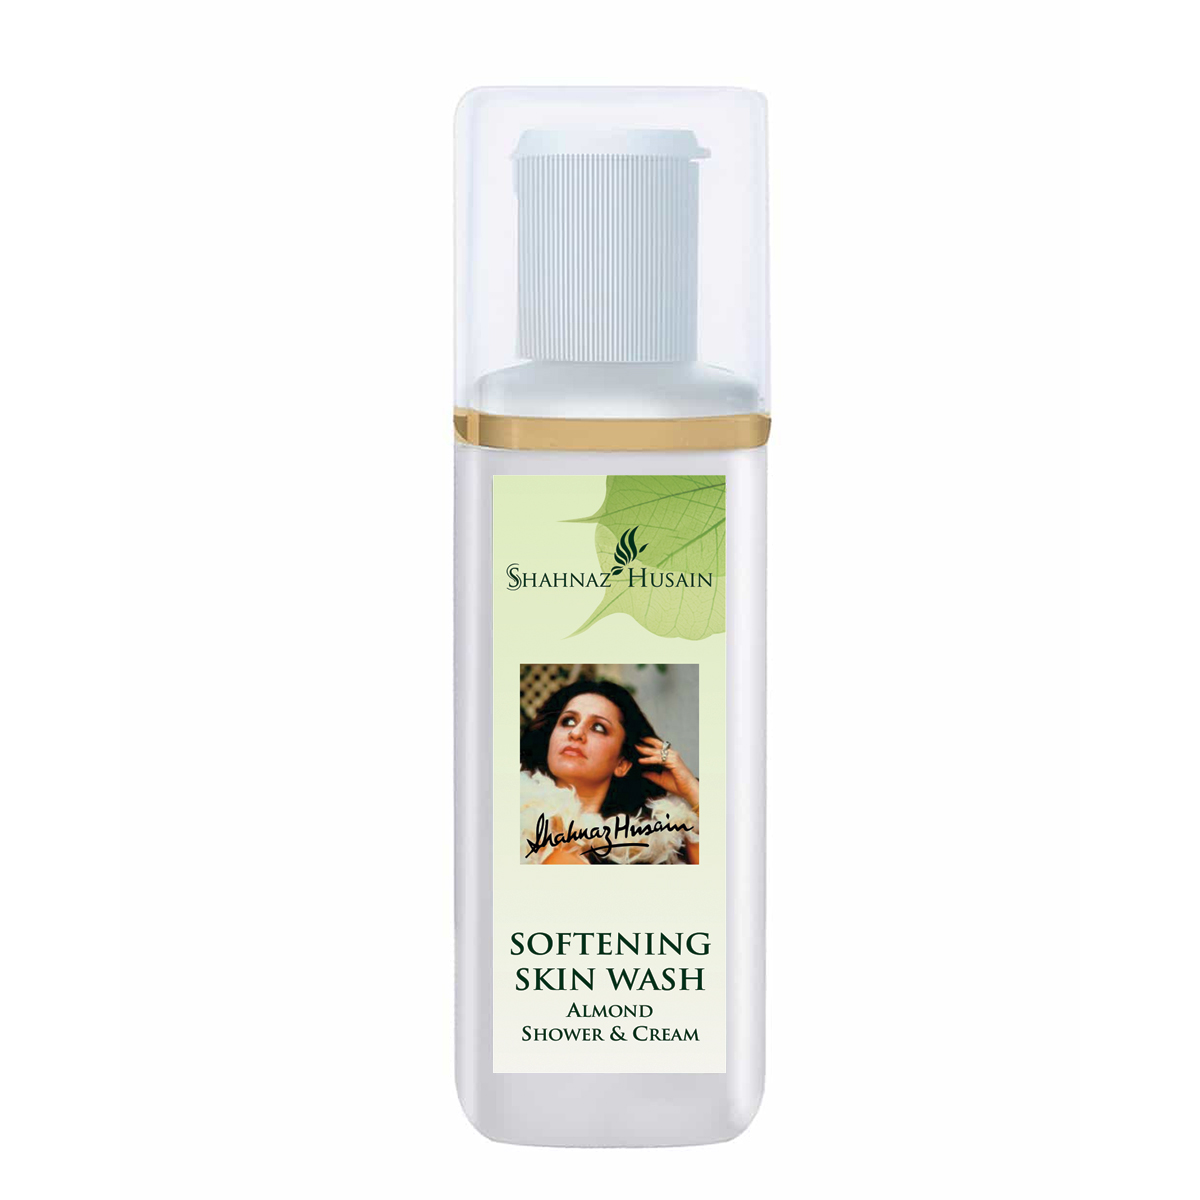 Shahnaz Husain Softening Skin Wash – Almond Shower & Cream - Distacart